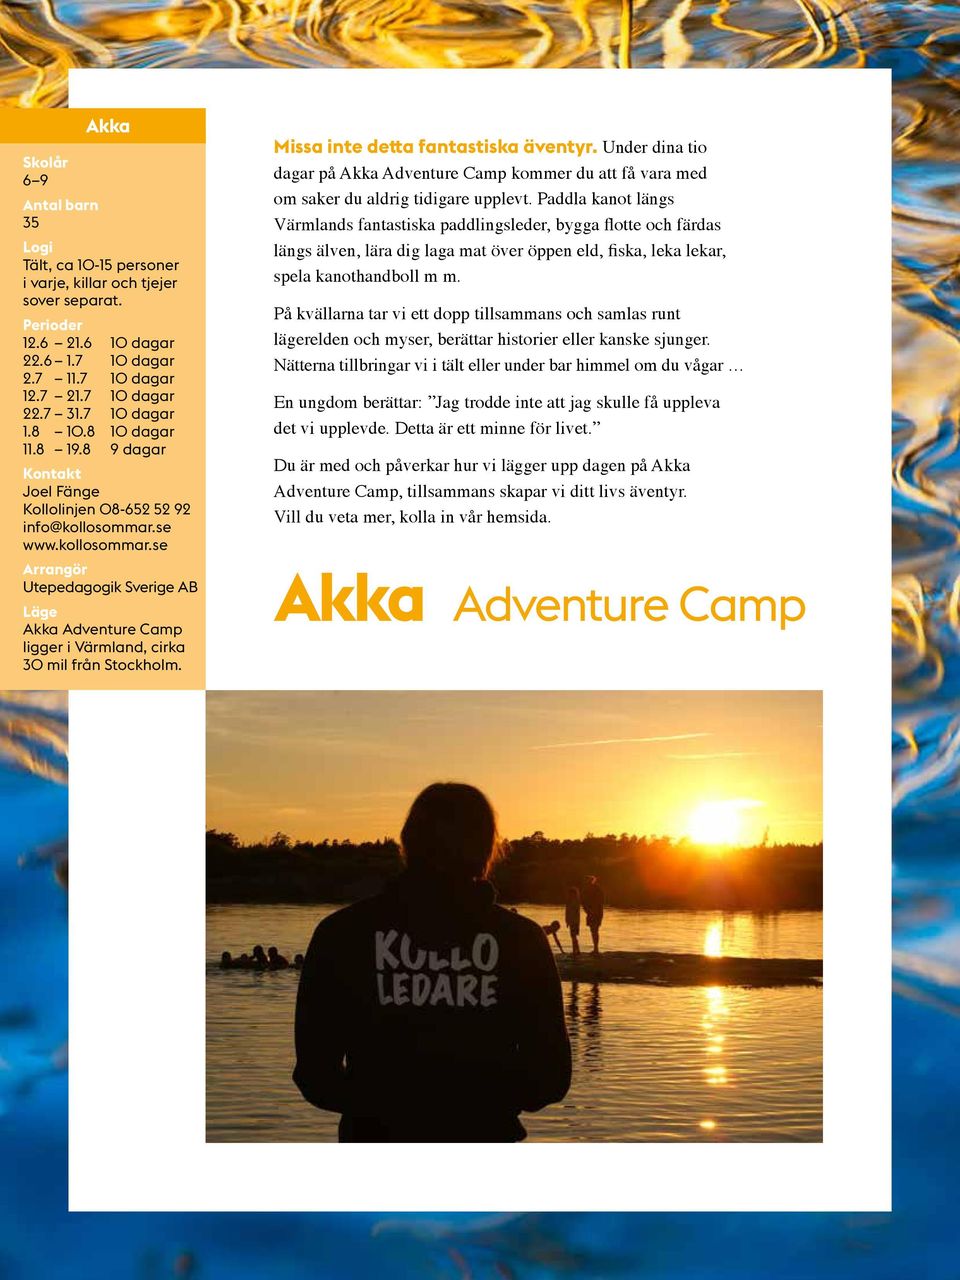 Missa inte detta fantastiska äventyr. Under dina tio dagar på Akka Adventure Camp kommer du att få vara med om saker du aldrig tidigare upplevt.